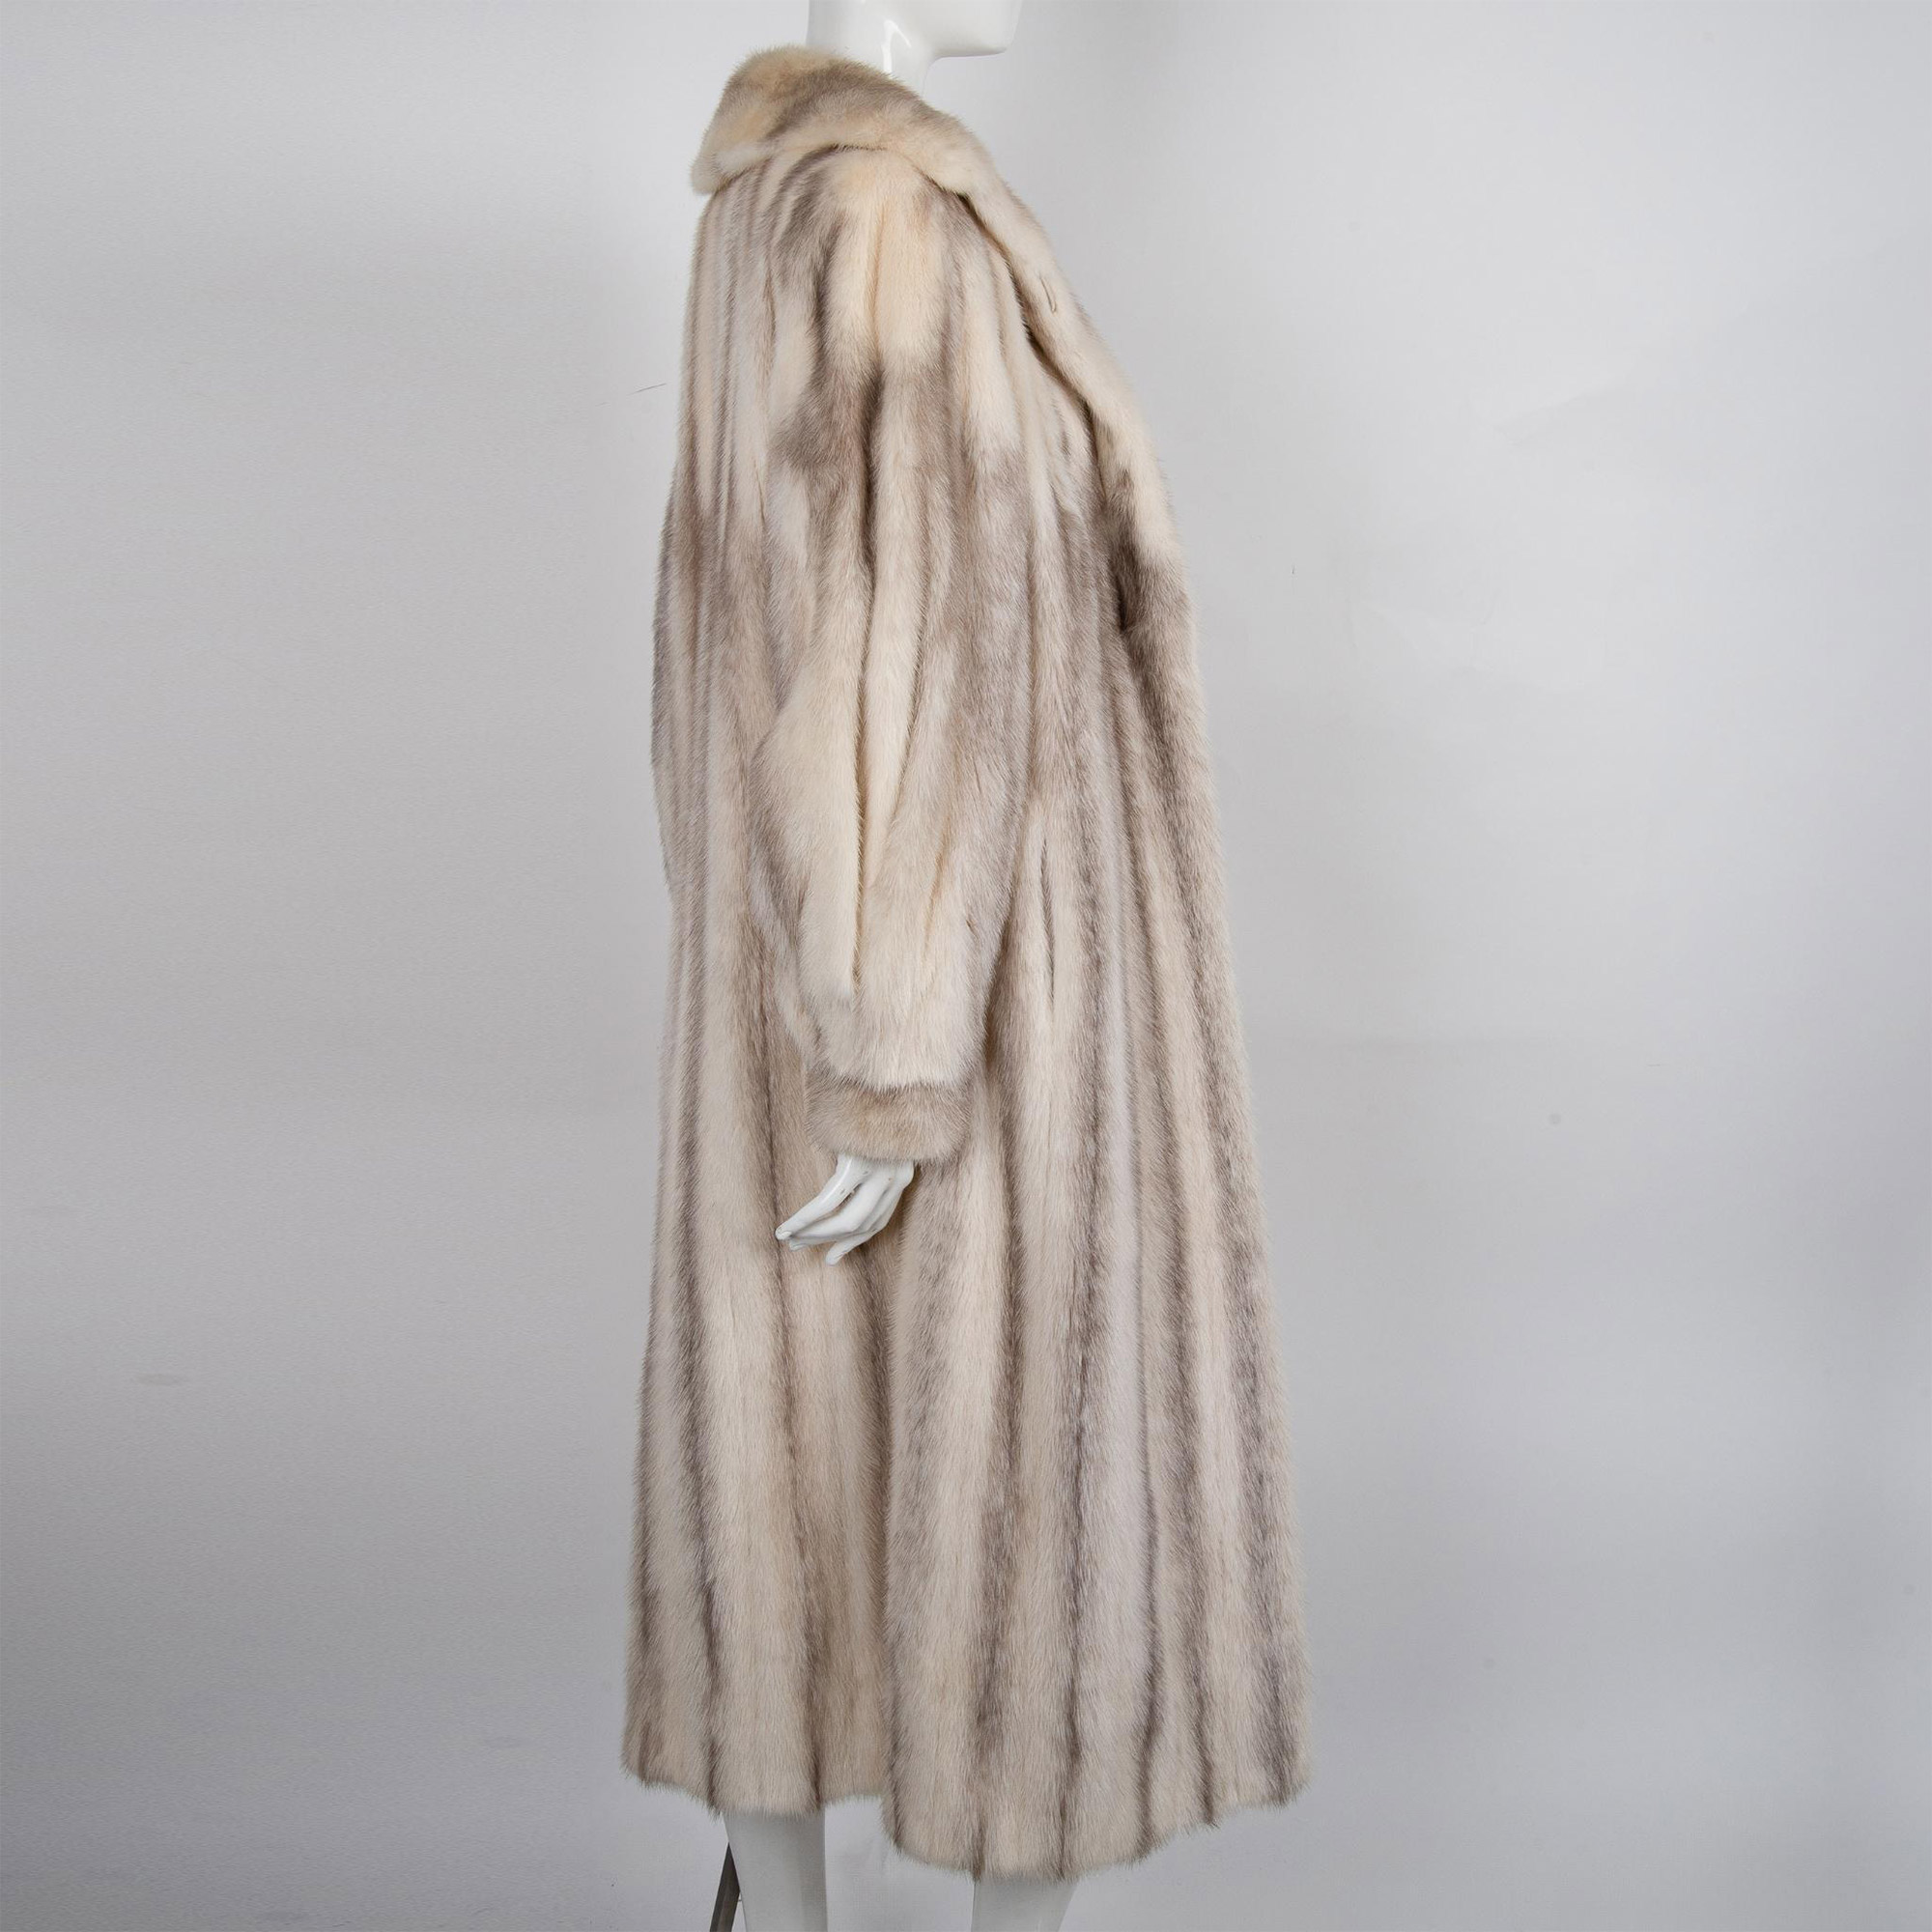 Vintage Rosendorf Evans Long Mink Fur Coat - Image 3 of 6